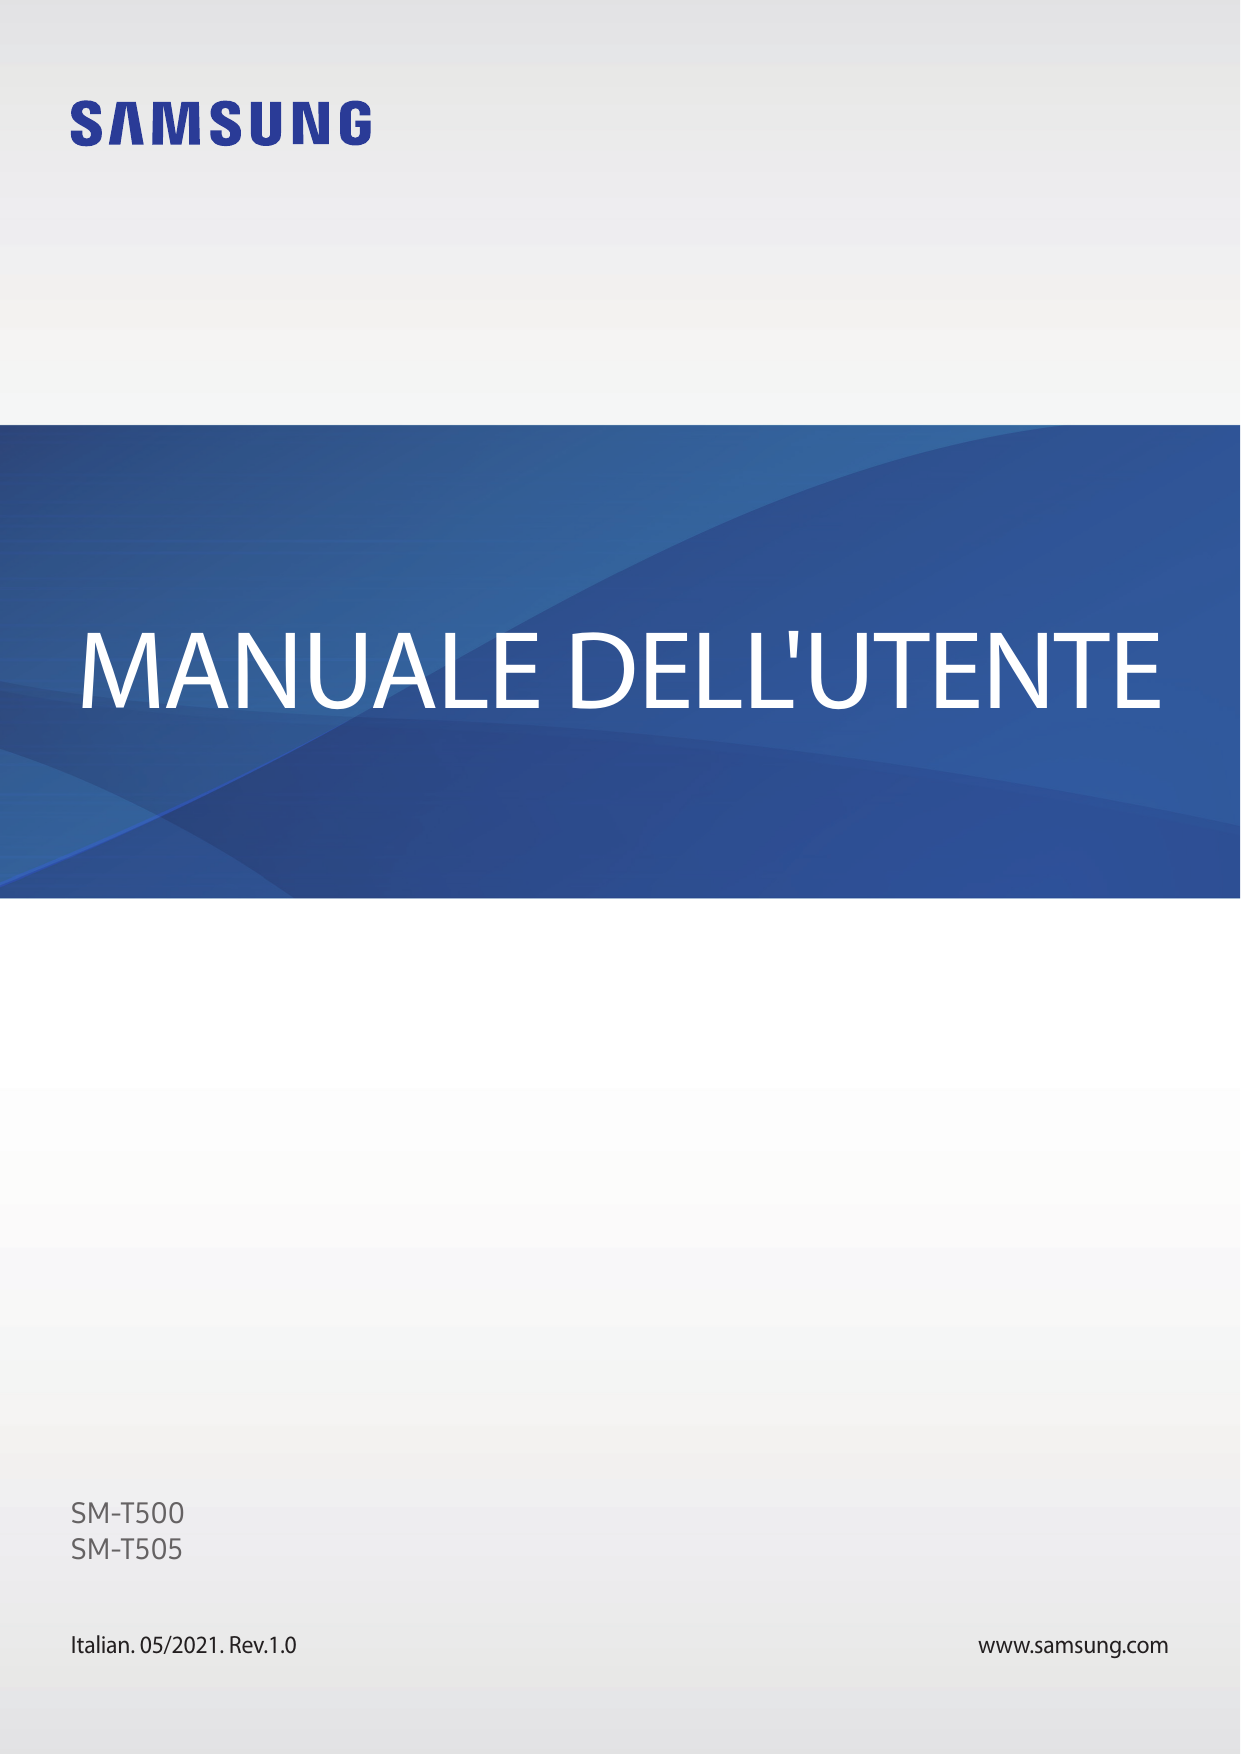 MANUALE DELL'UTENTESM-T500SM-T505Italian. 05/2021. Rev.1.0www.samsung.com